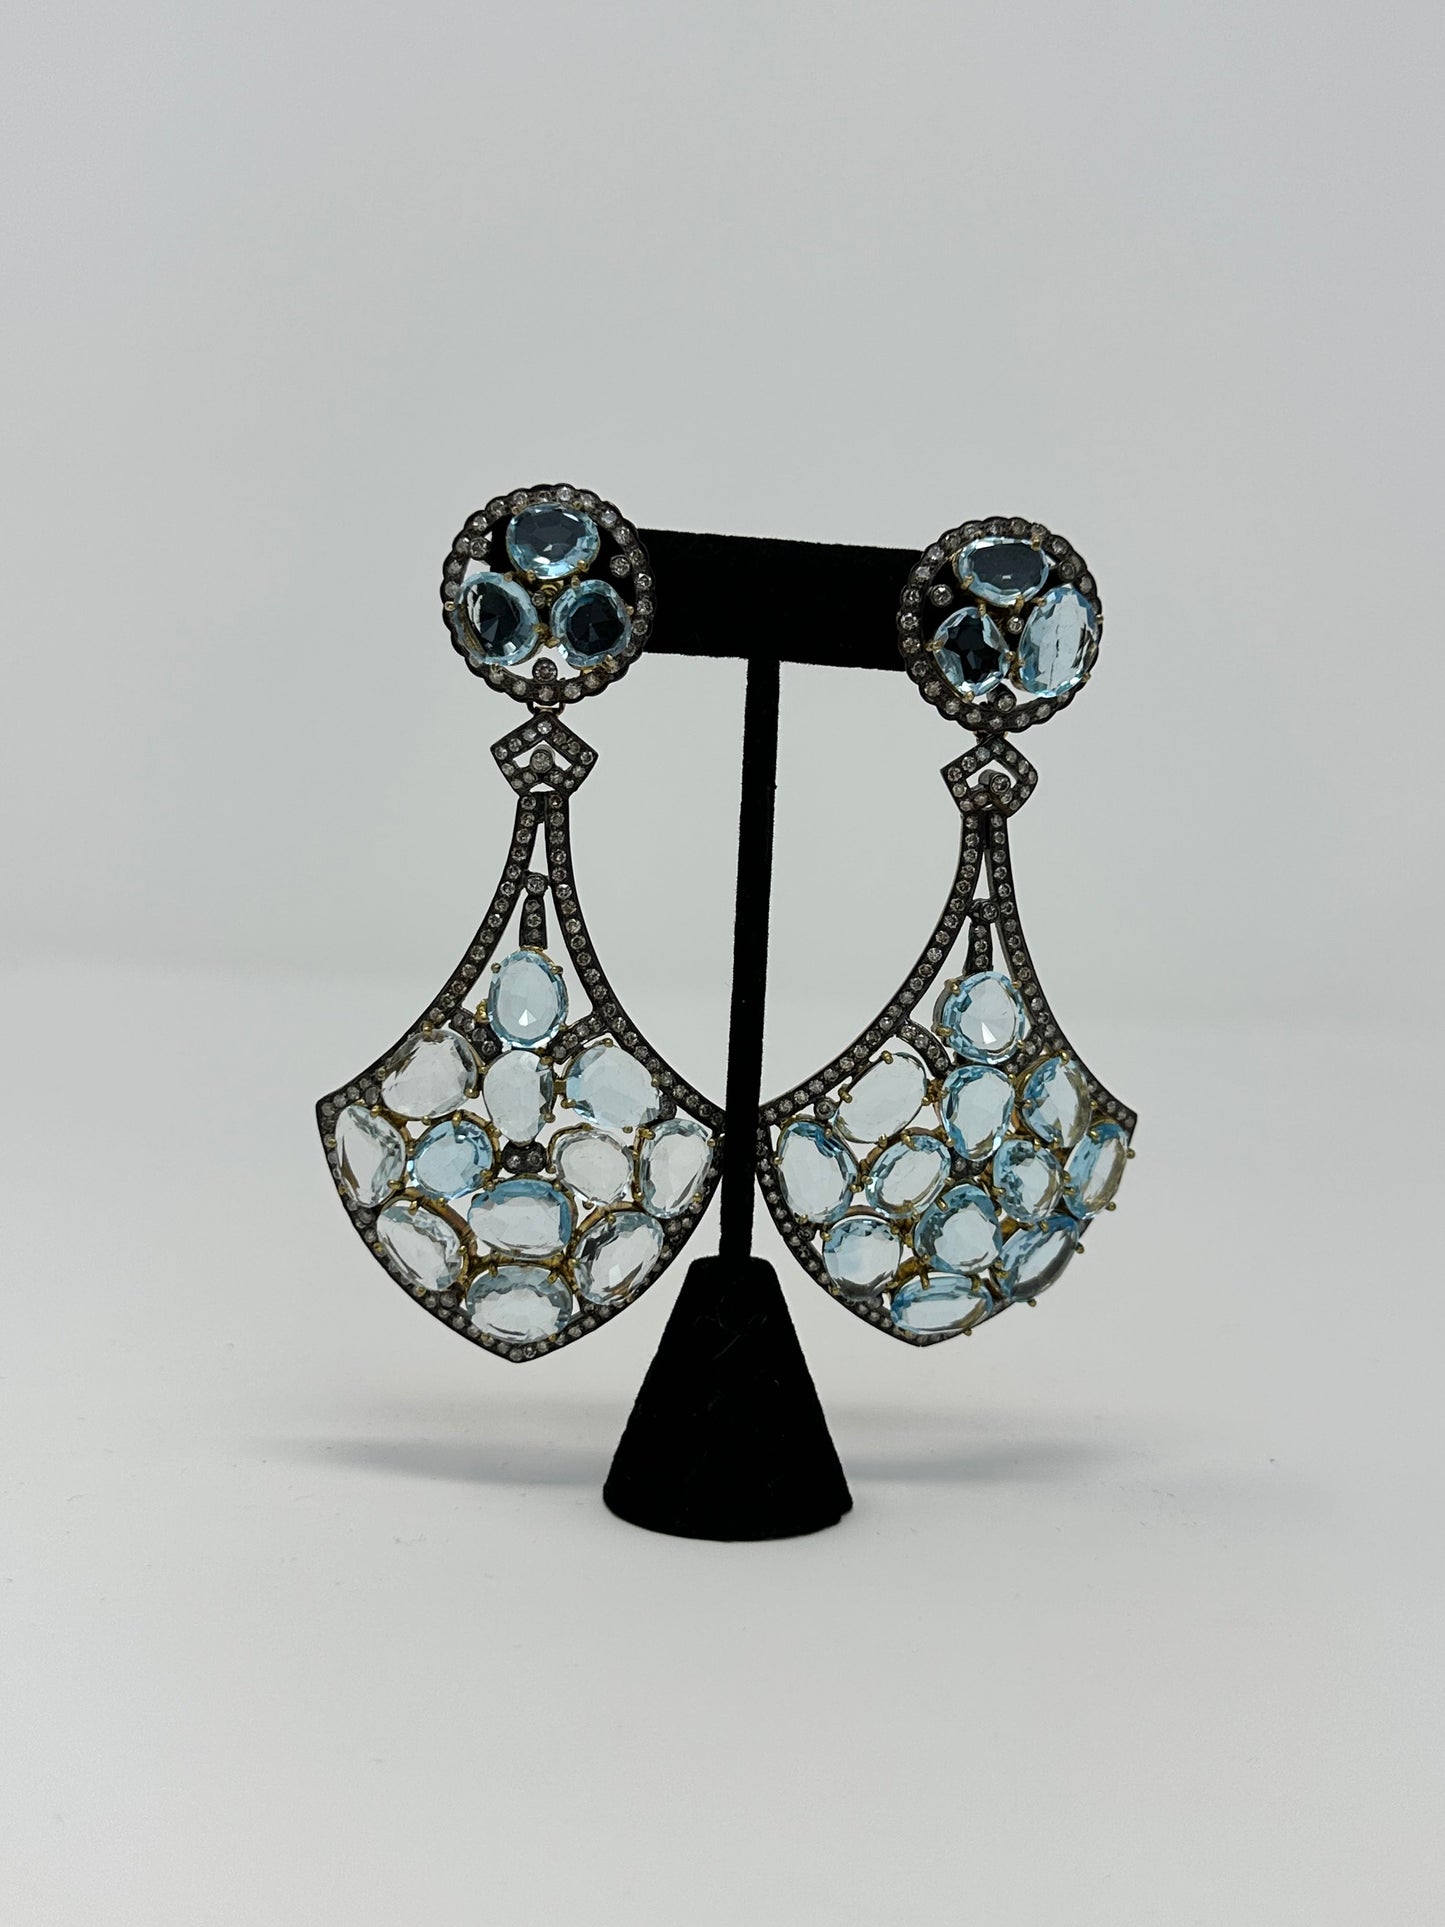 Blue topaz andr Diamond Earring